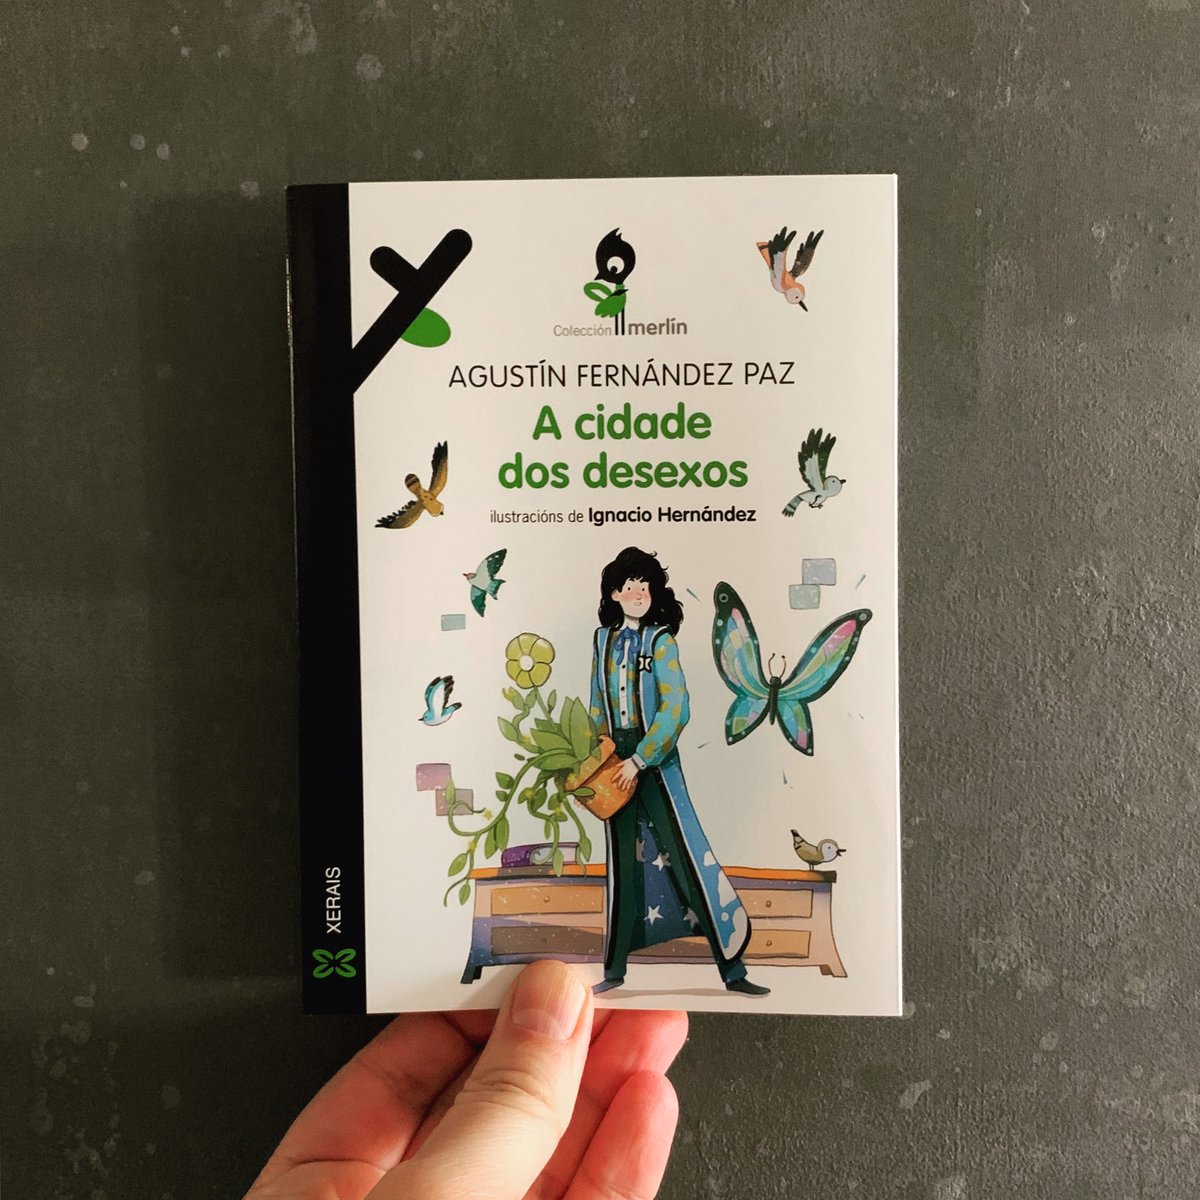 O primeiro libro infantil de Agustín Fernández Paz ilustrado por @ignaciohernandezf nunha nova edición na colección Merlín de @Xerais ✨
#lixgalega #lerengalego #vilacosteleta